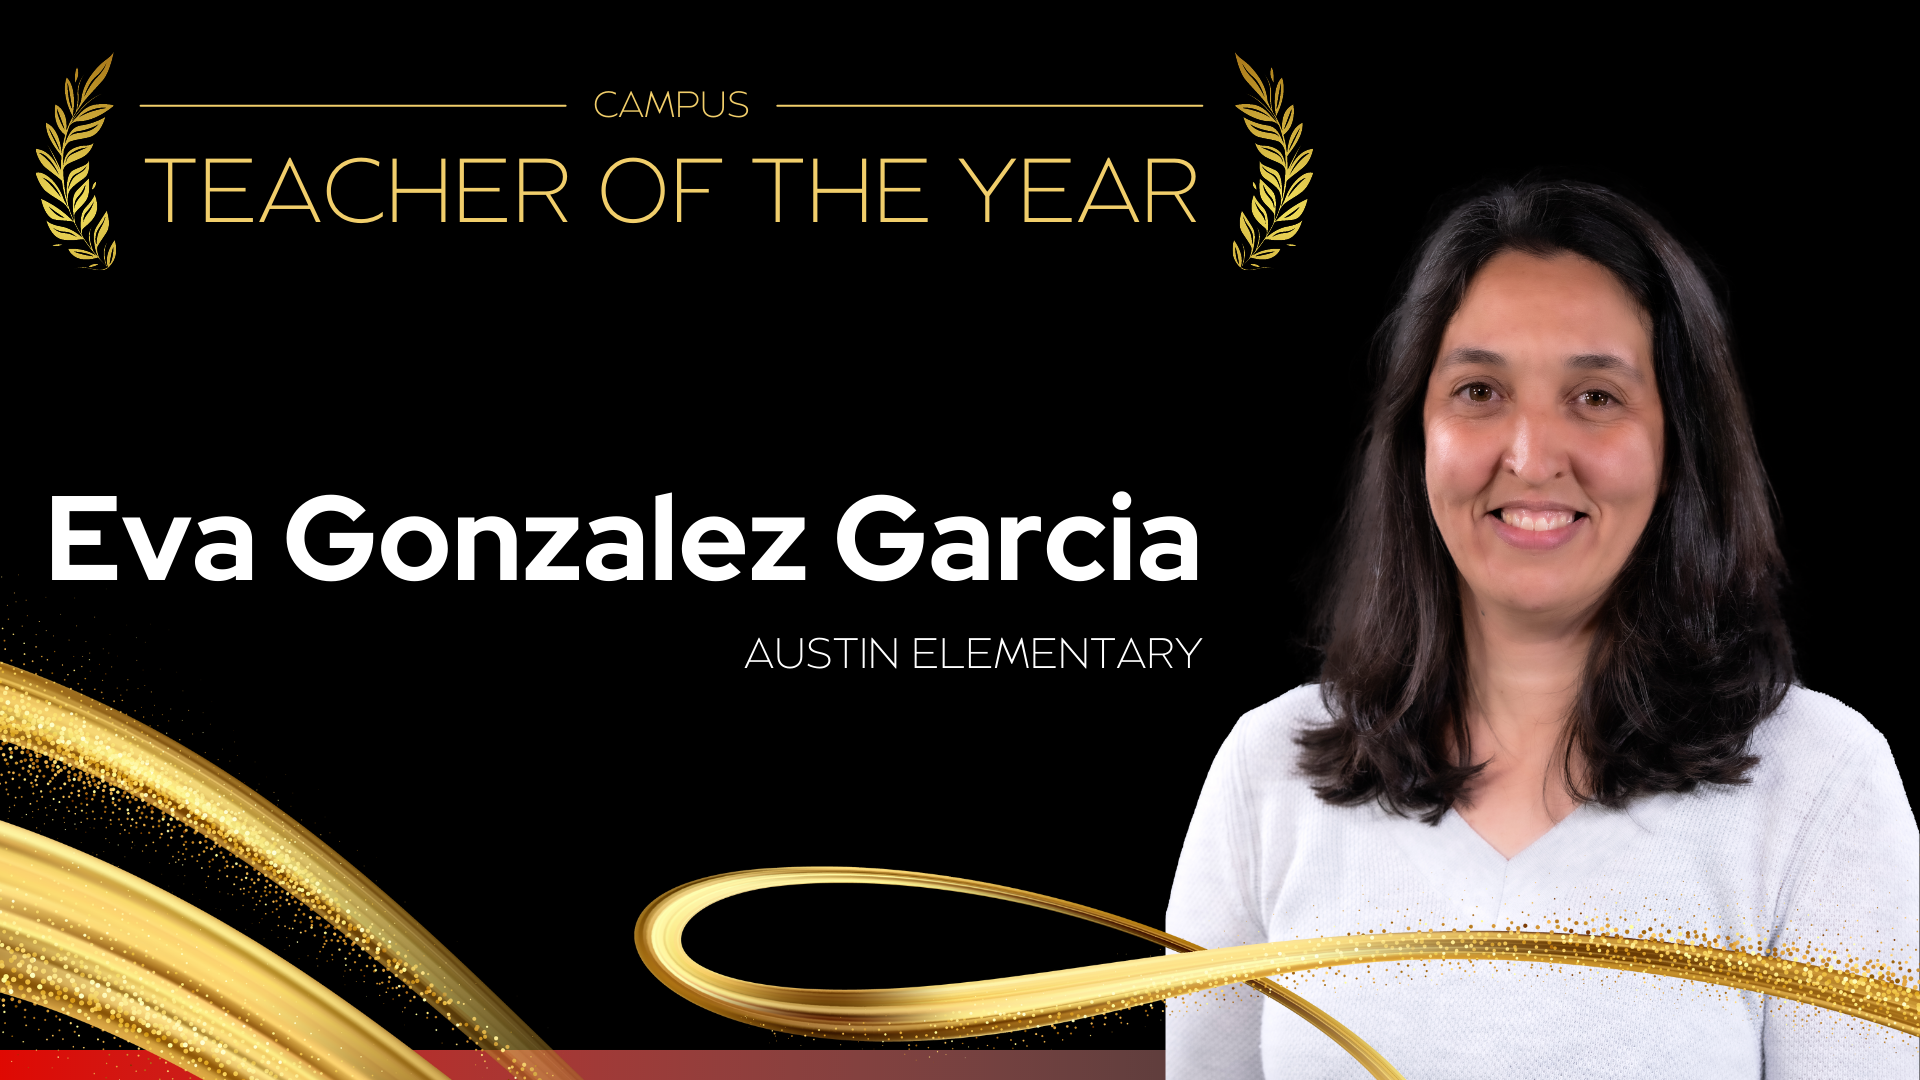 Campus Teacher of the Year T. J. Austin Elementary School - Eva Gonzalez Garcia